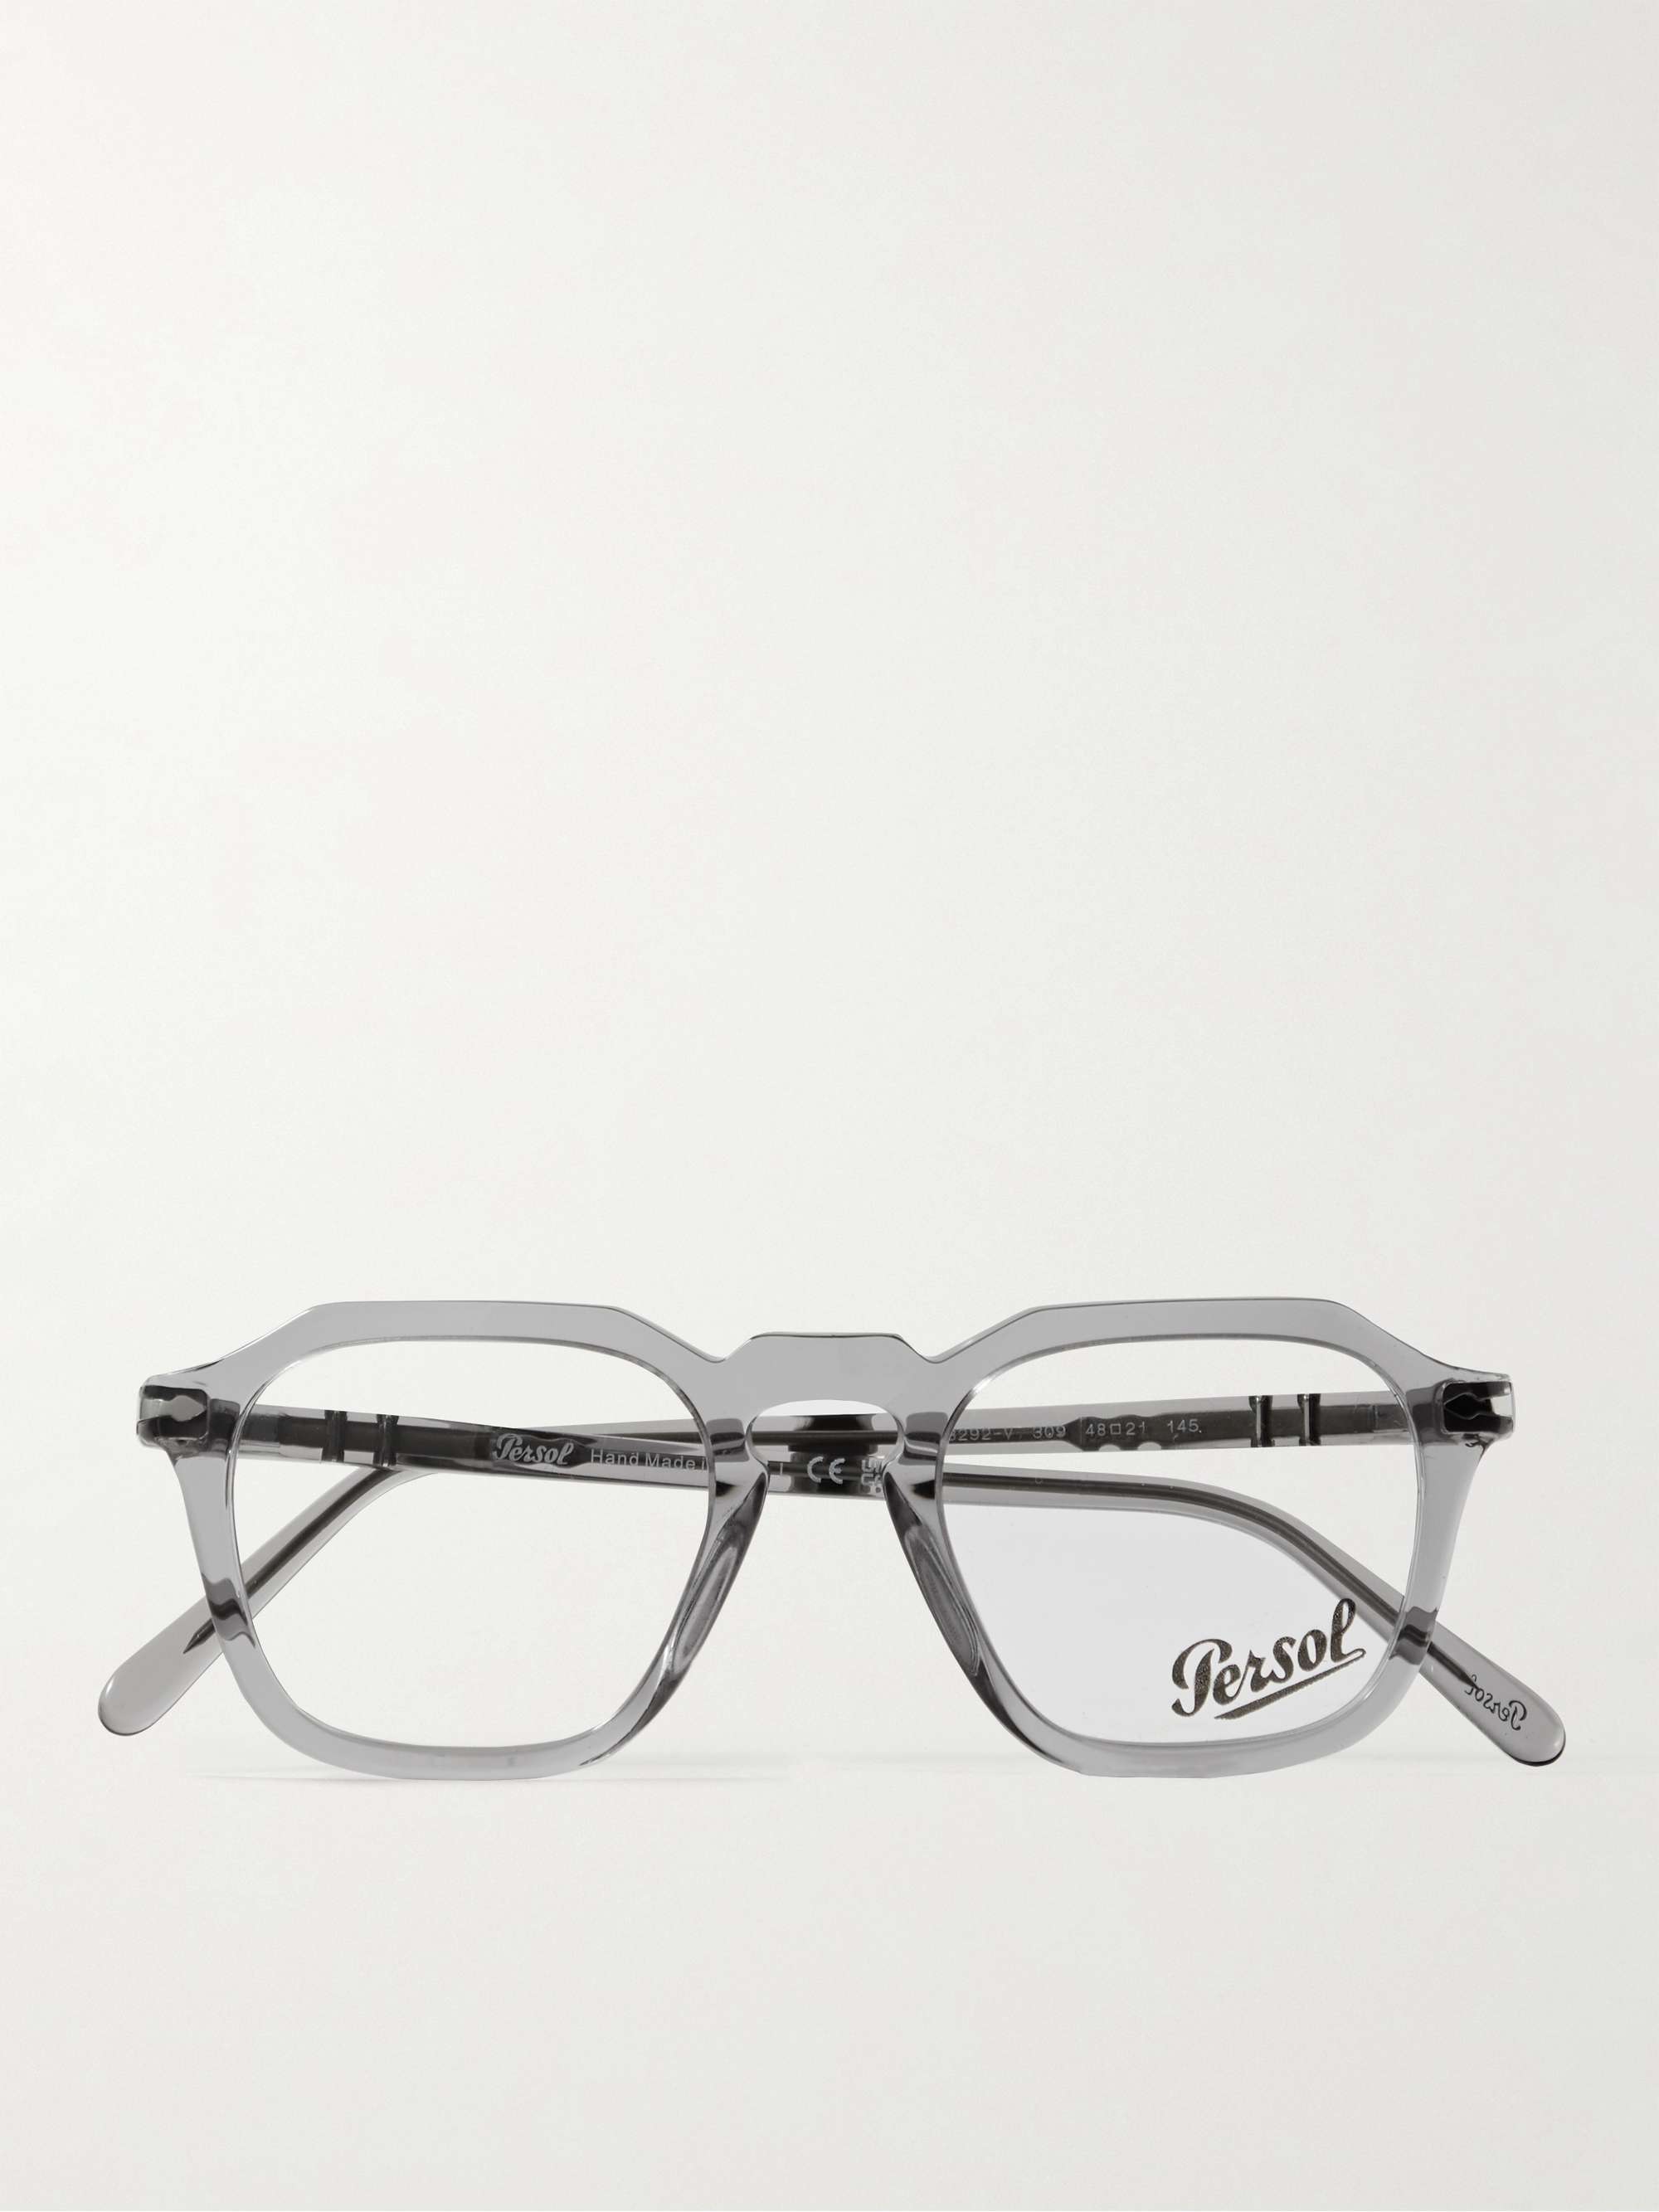 PERSOL D-Frame Acetate Optical Glasses | MR PORTER